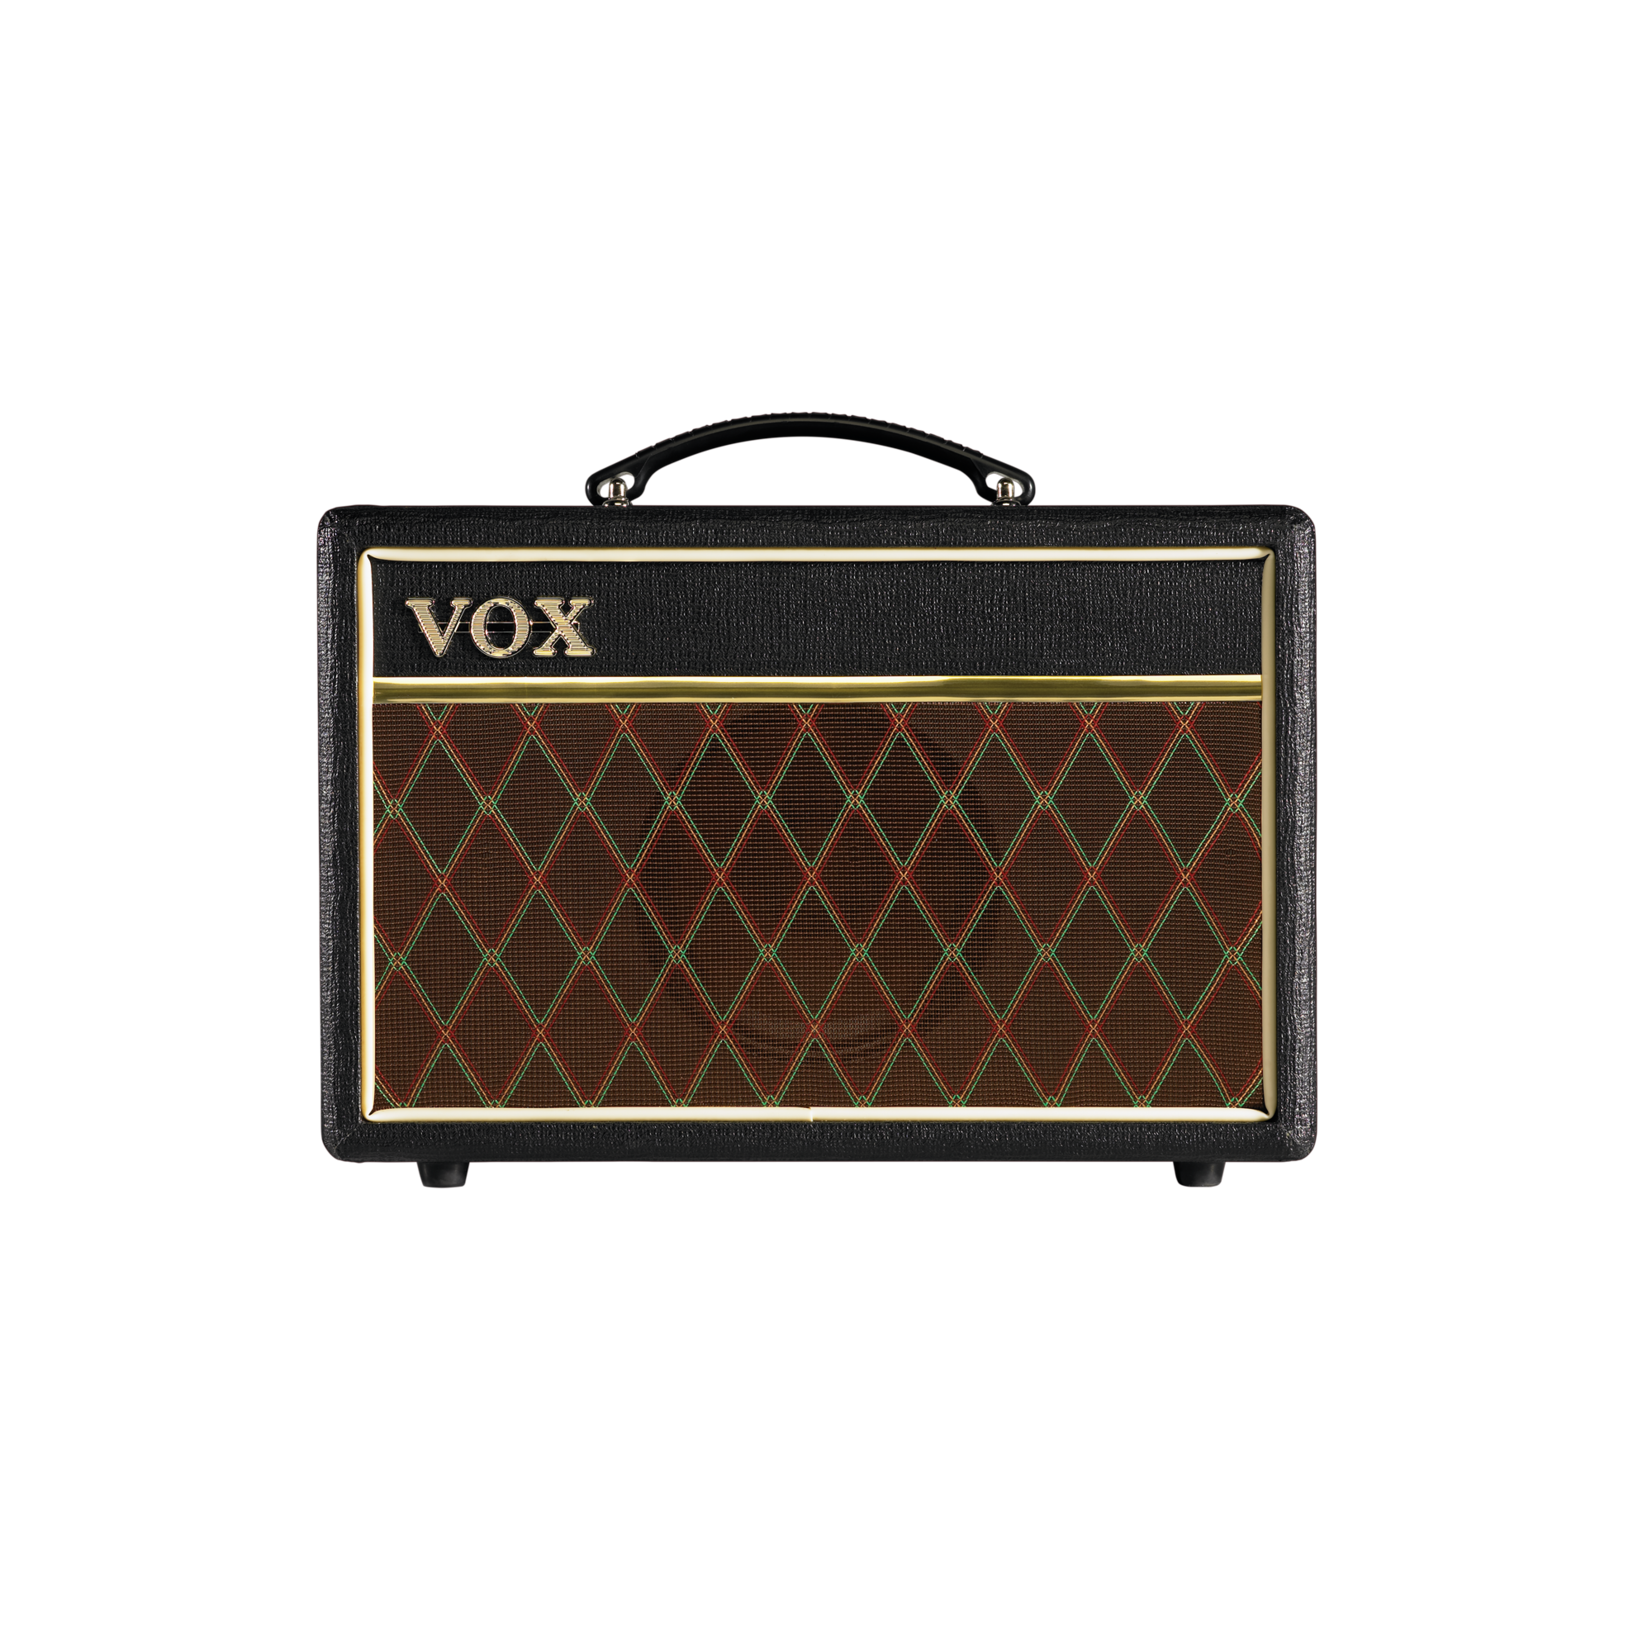 Vox Vox Pathfinder 10w, 6,5" speaker